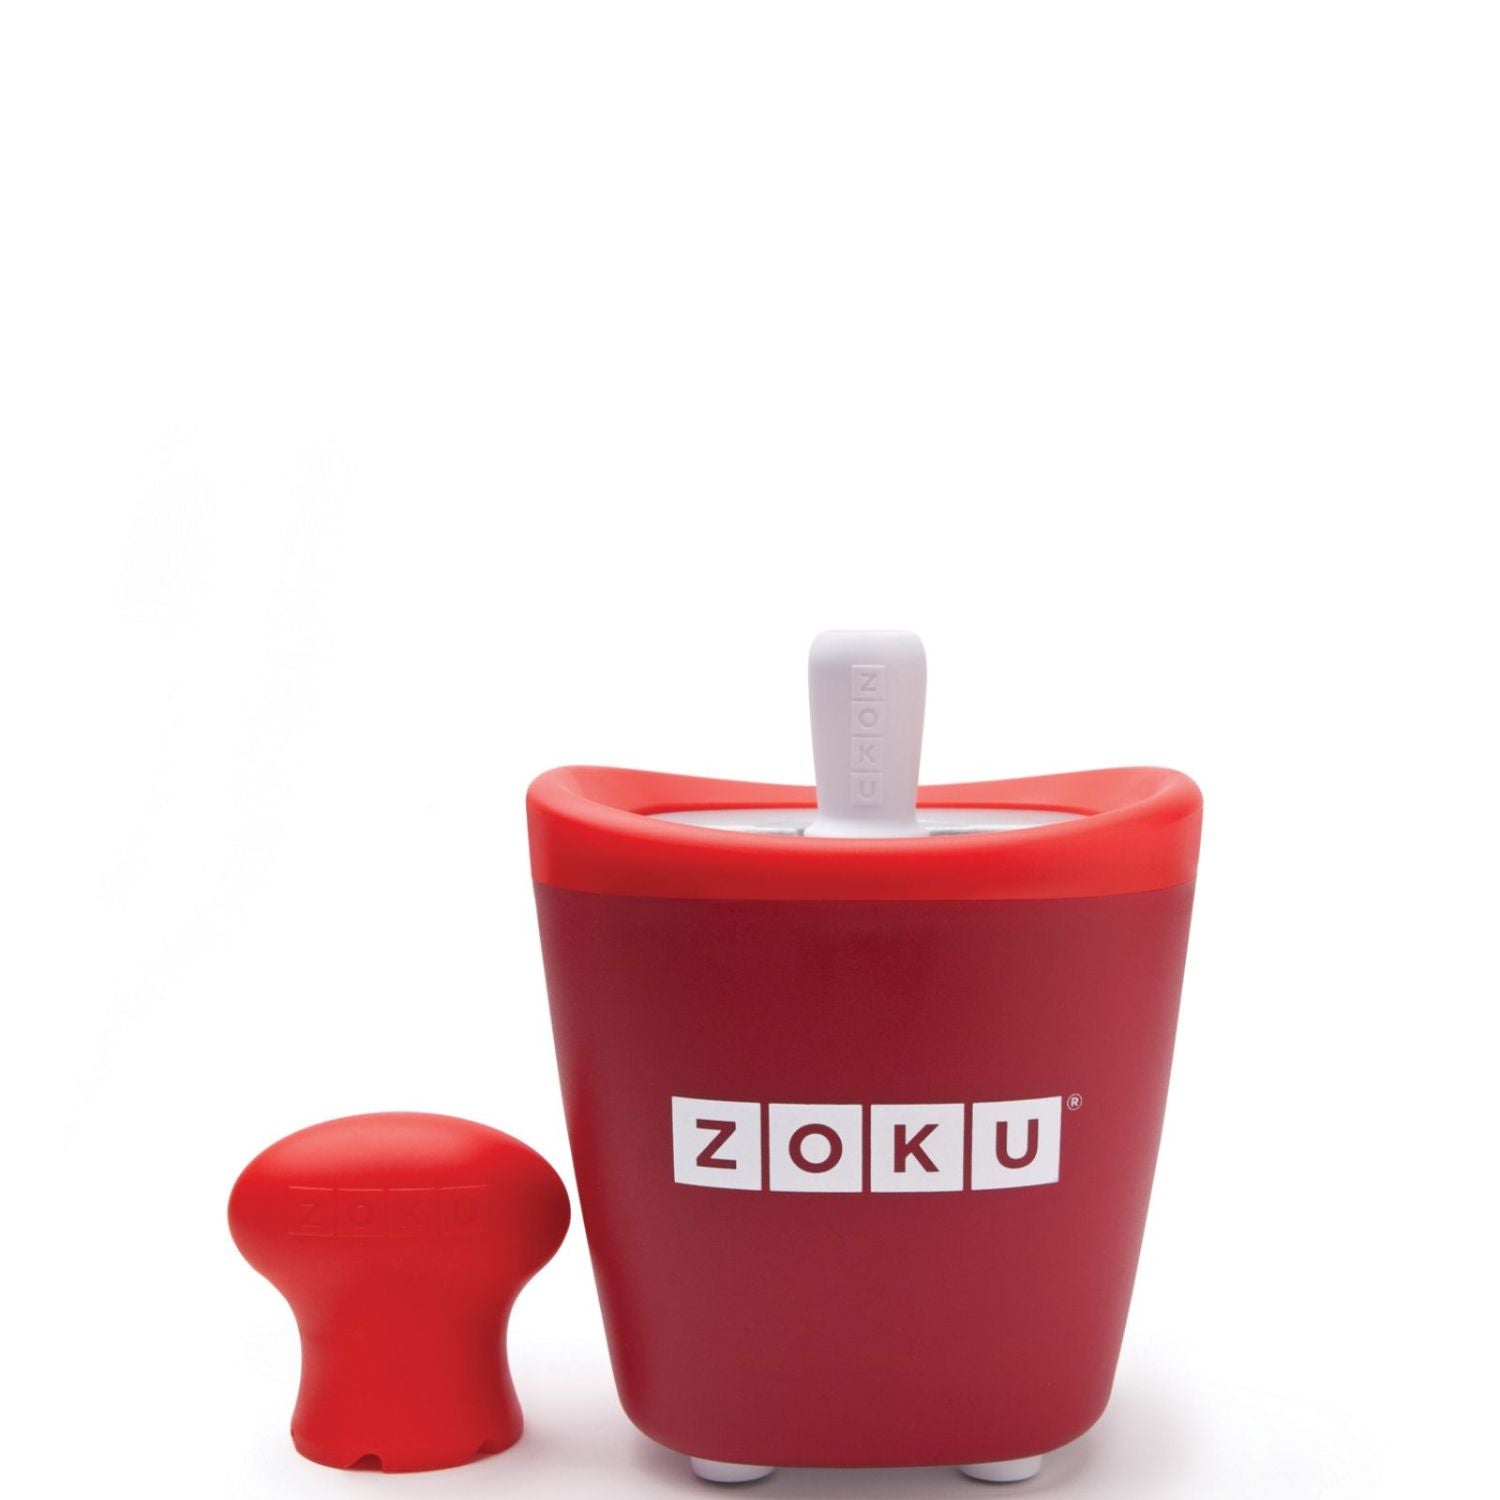 Zoku Single Quick Pop Maker, Red, 60ml Per Pop